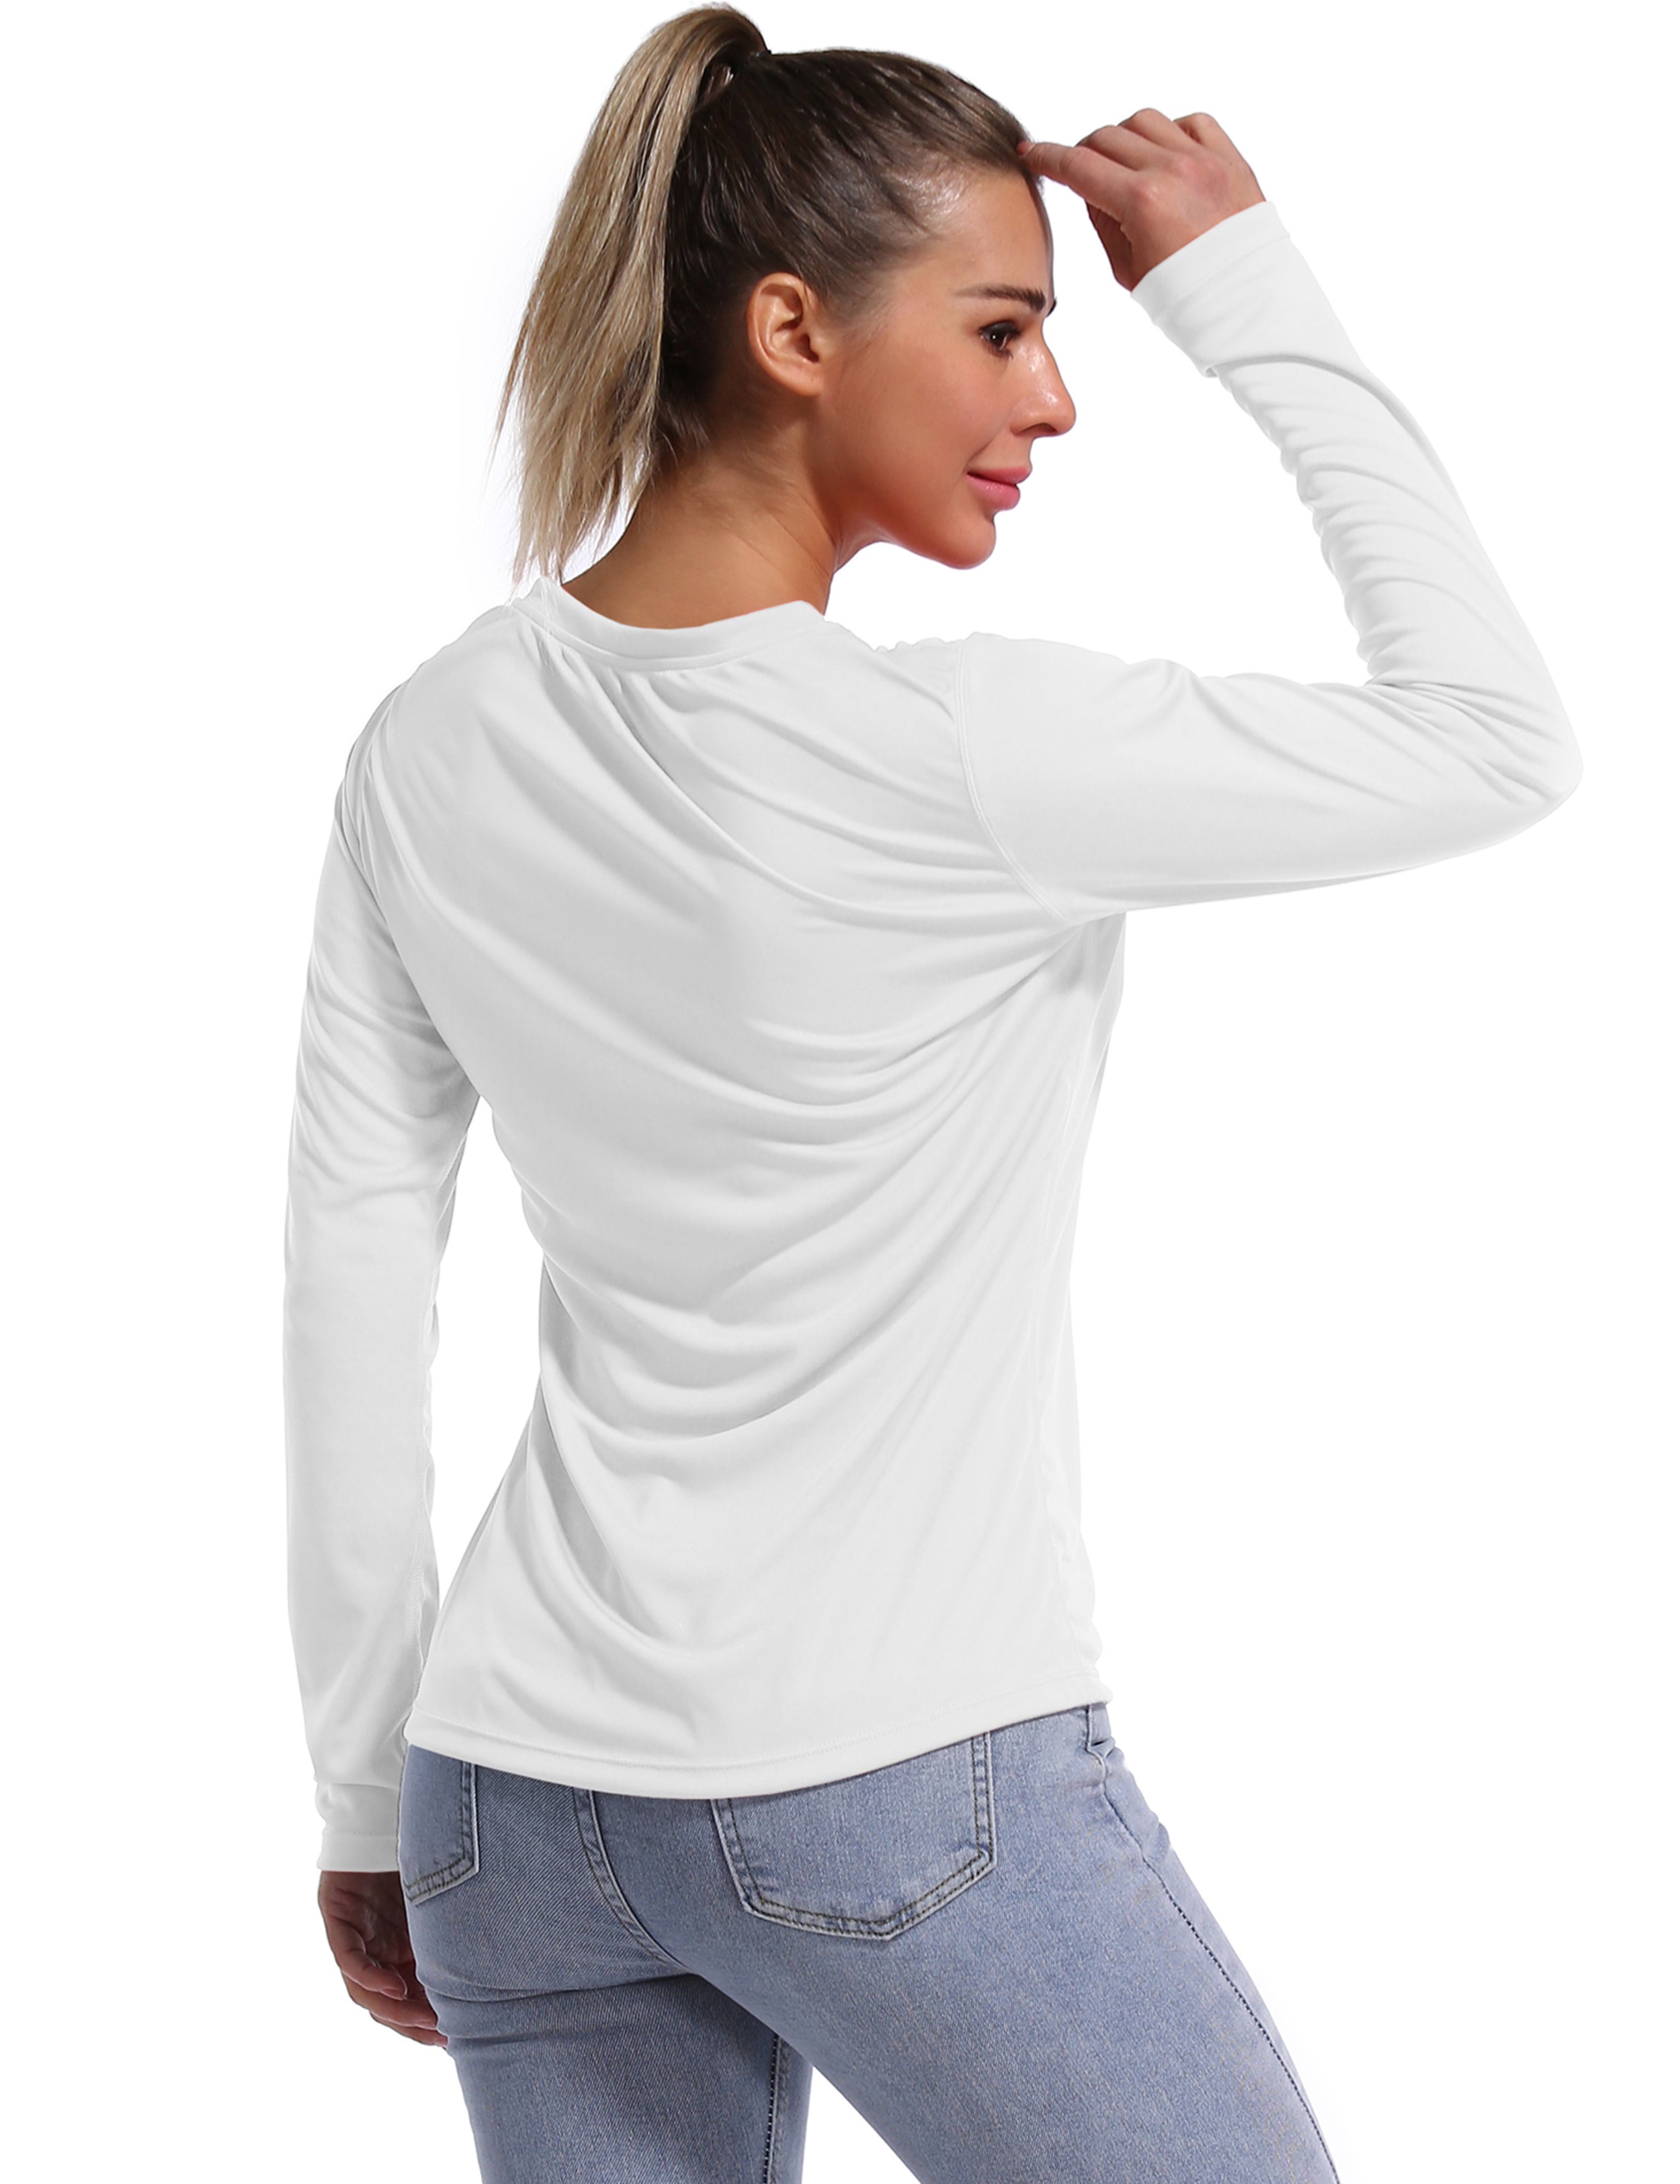 V Neck Long Sleeve Athletic Shirts white_Jogging